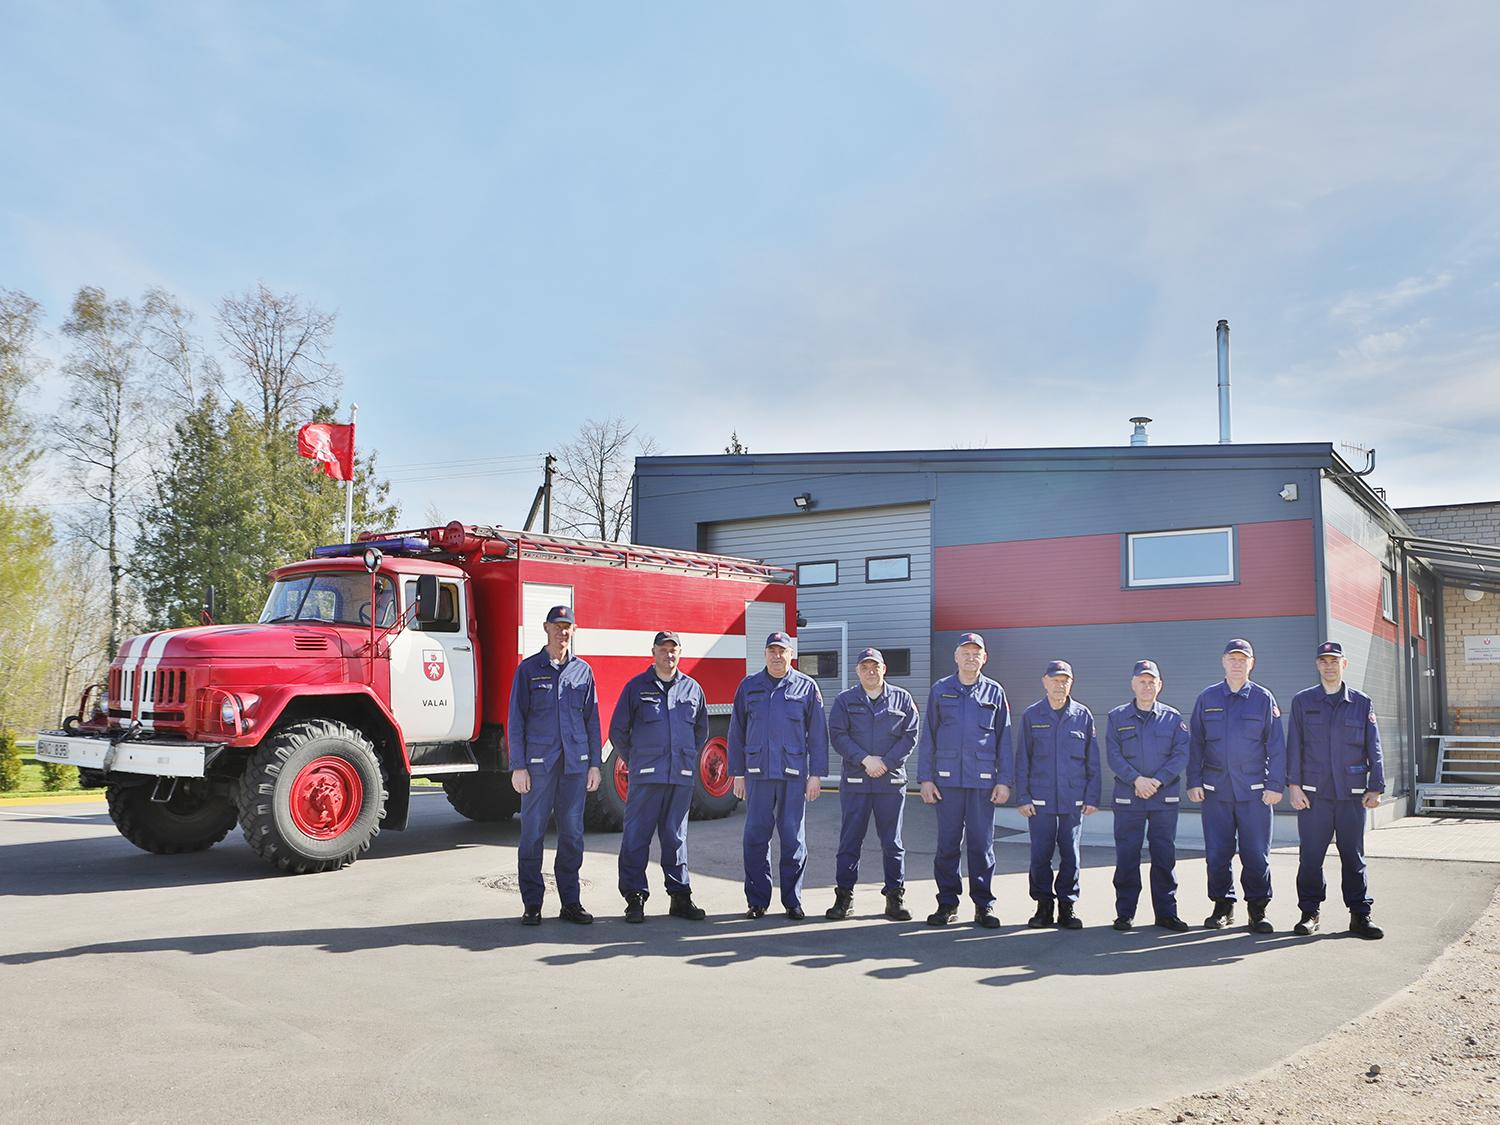 Valų ugniagesiai dirbs naujose patalpose / Įvyko naujojo Valų ugniagesių komandos pastato atidarymas.  Dainiaus Vyto nuotr.